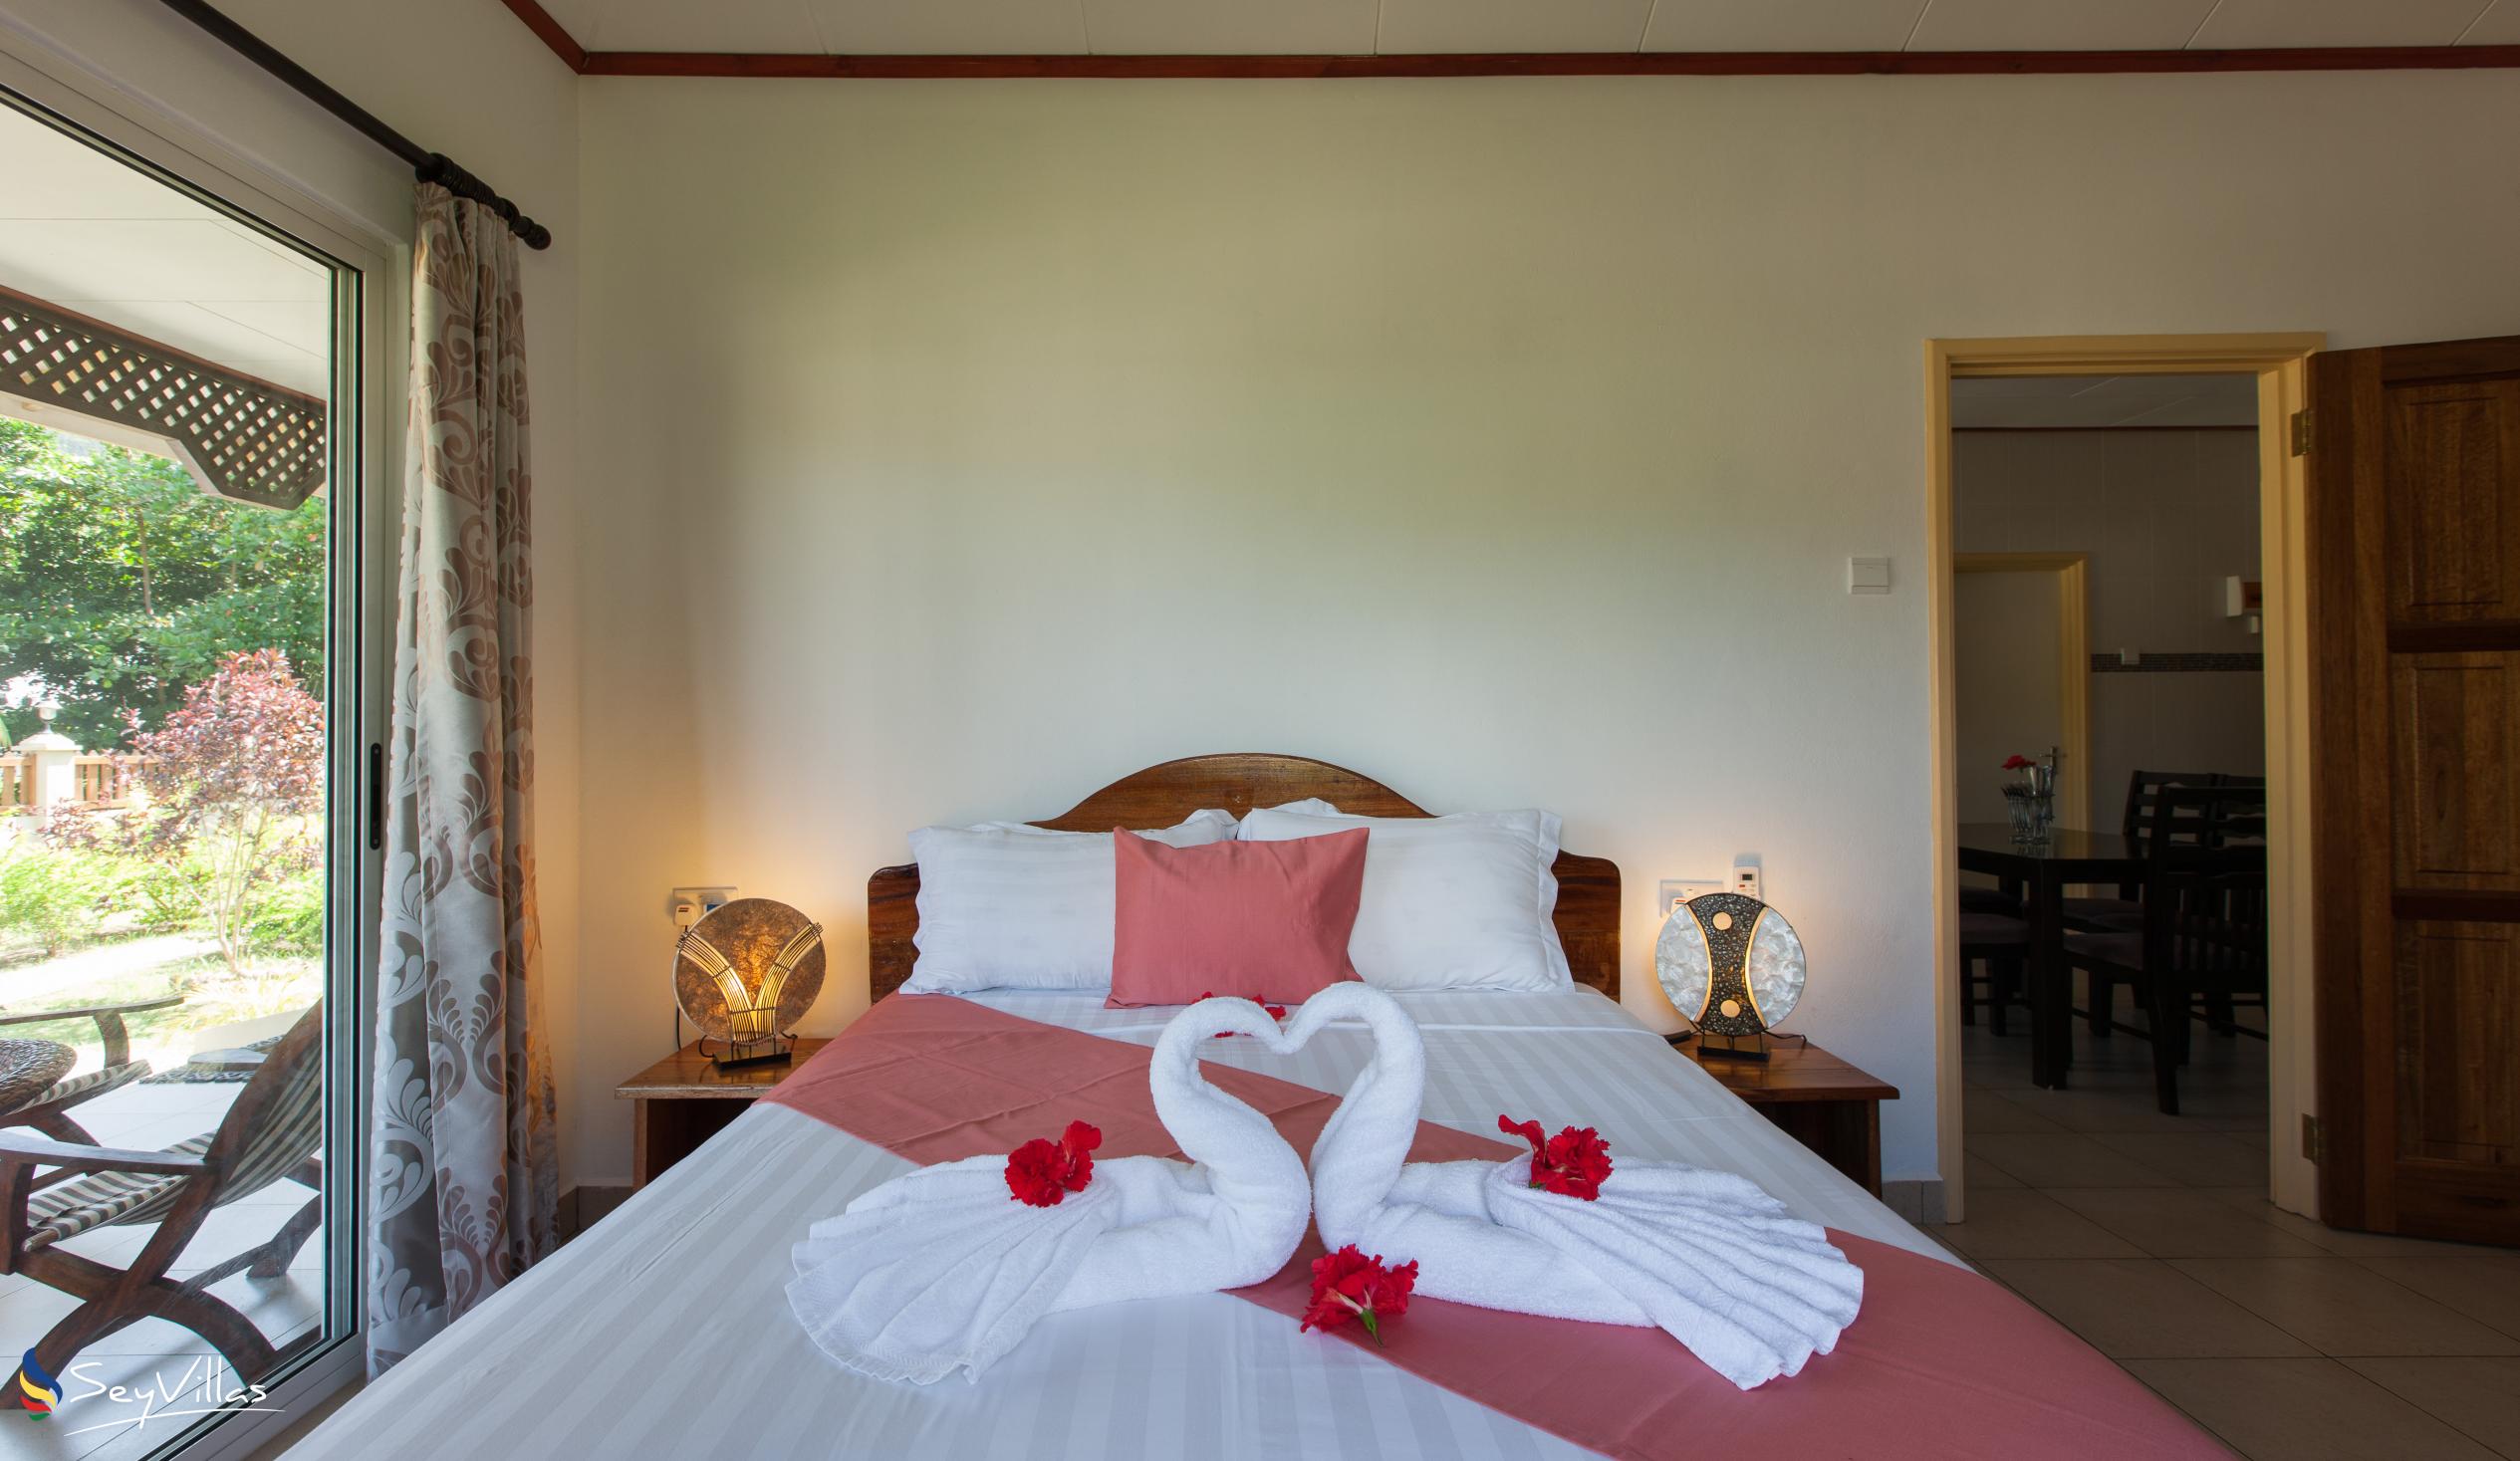 Foto 58: Hostellerie La Digue - Chalet 2 chambres - La Digue (Seychelles)